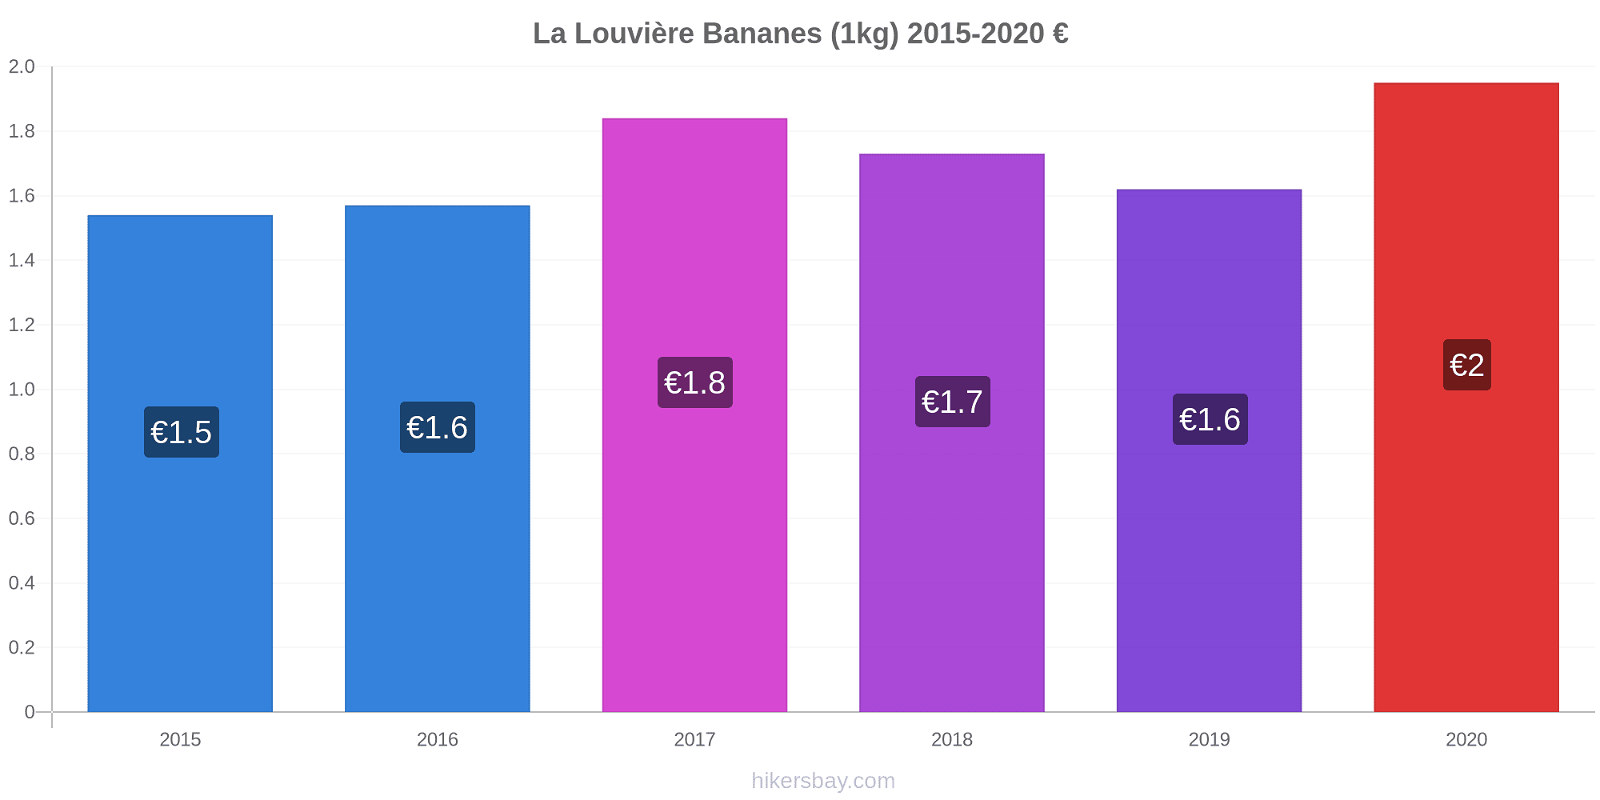 La Louvière changements de prix Bananes (1kg) hikersbay.com